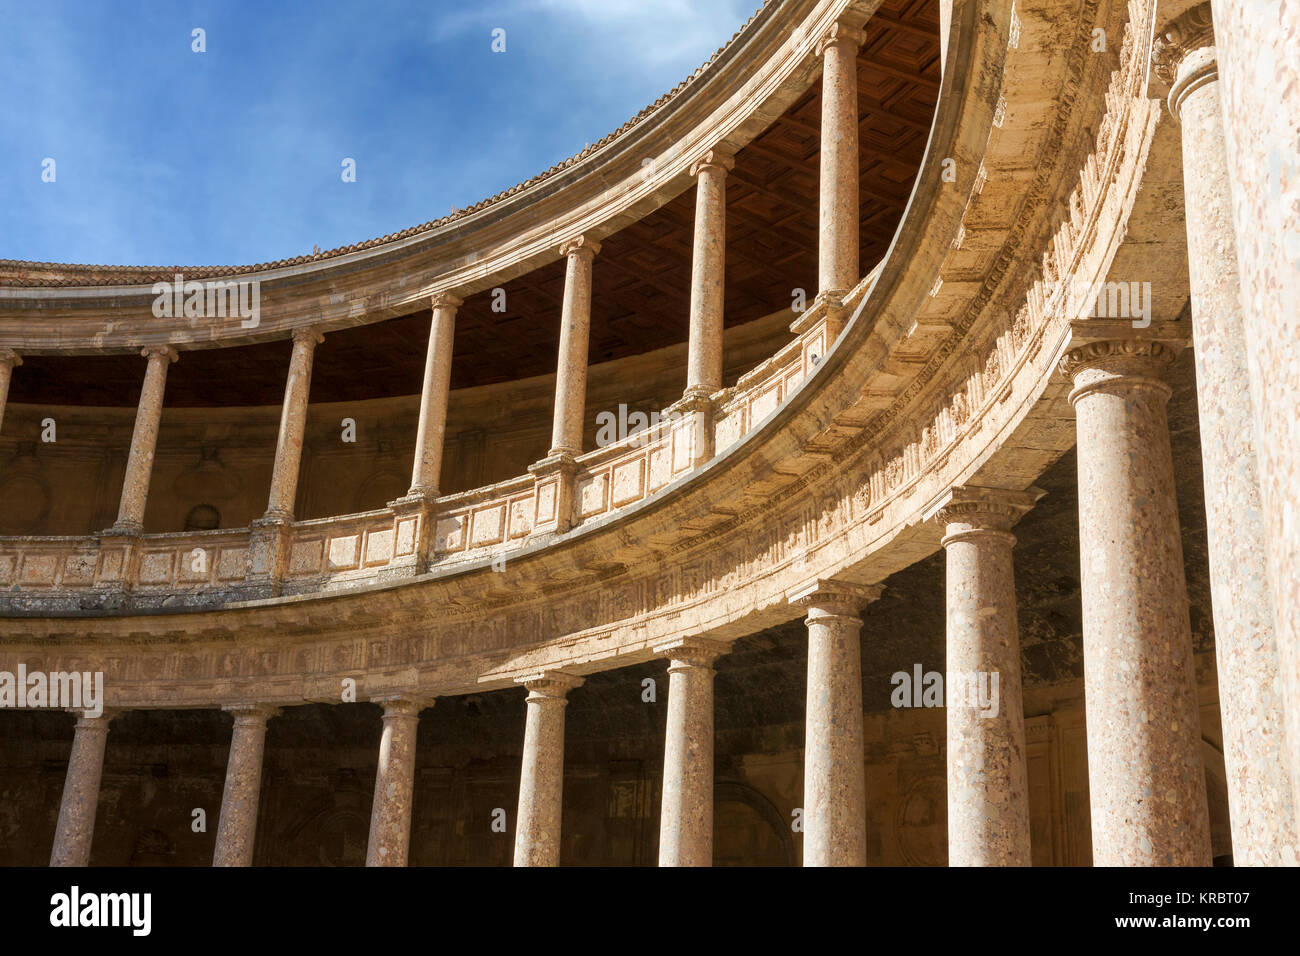 Partie de la circulaire cour intérieure du Palacio de Carlos V (Palais de Charles Quint) dans le complexe de l'Alhambra, Grenade, Andalousie, Espagne Banque D'Images